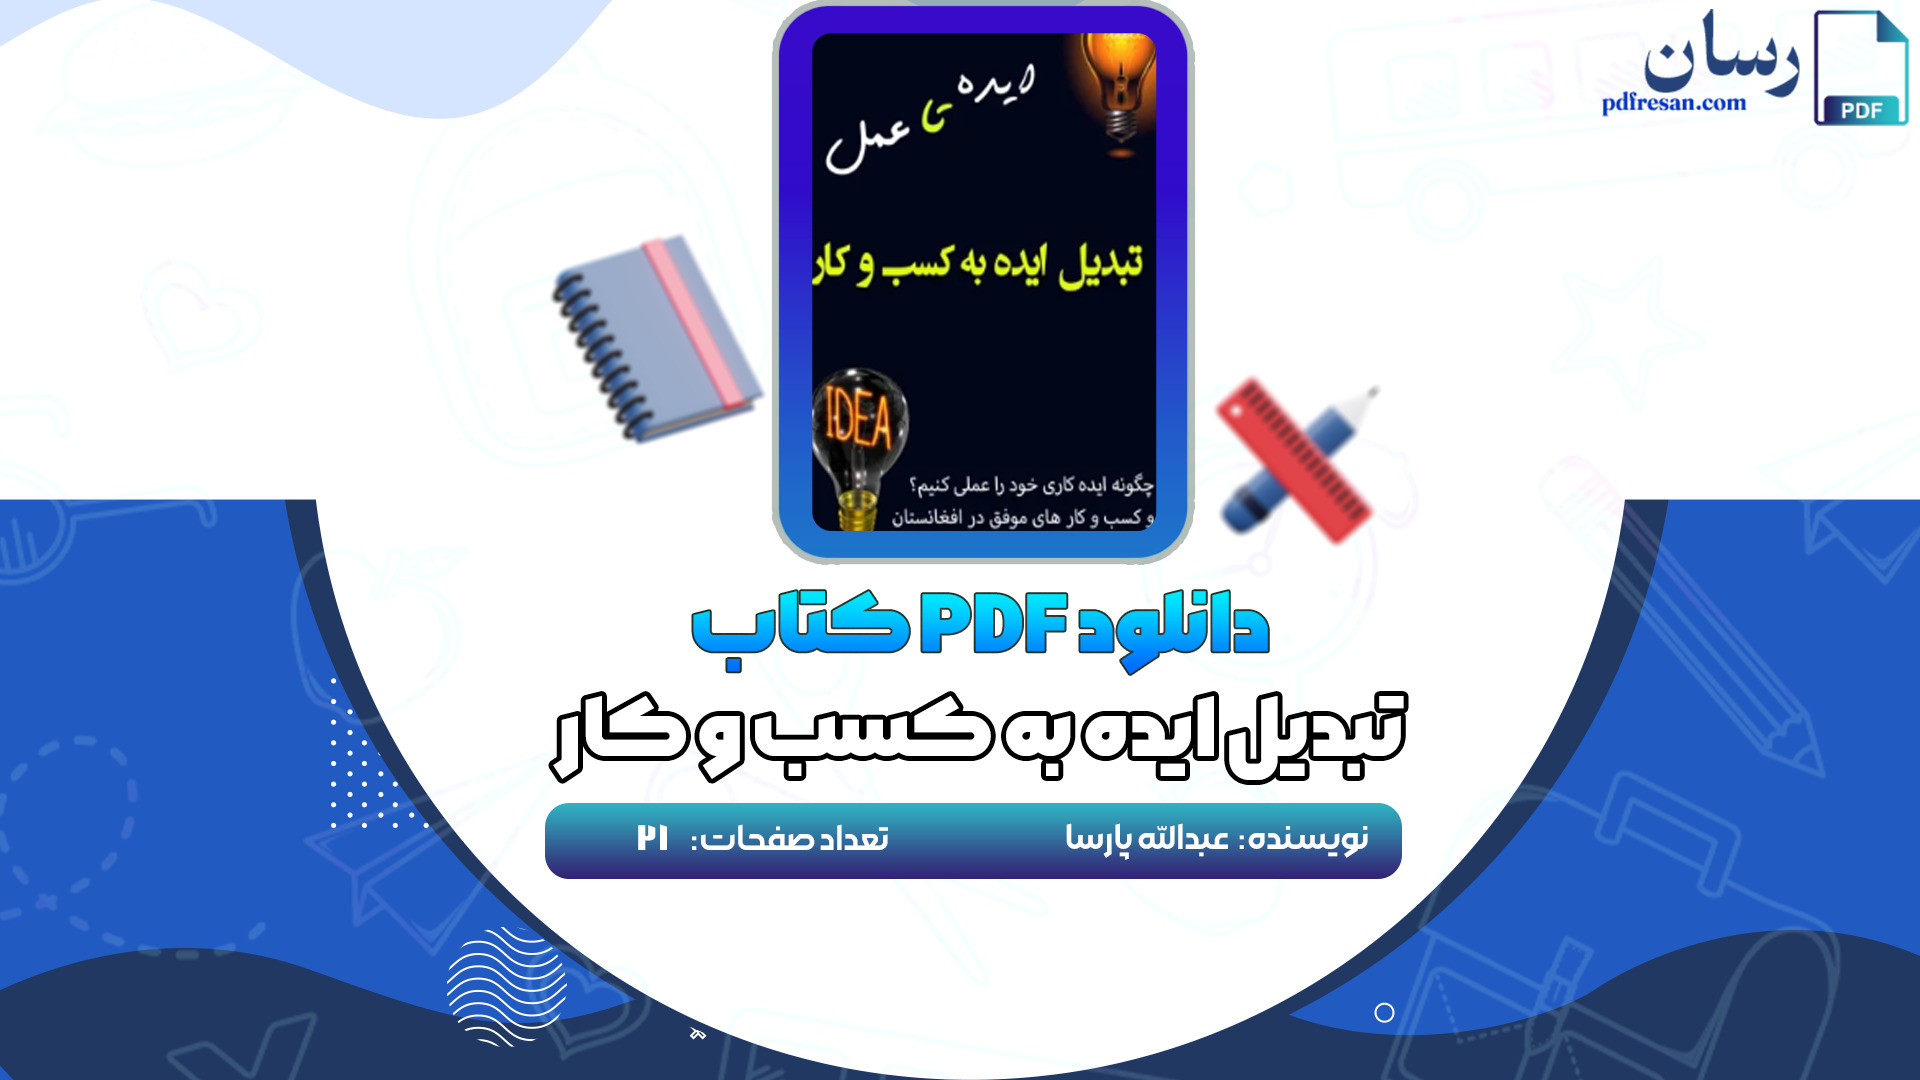 دانلود کتاب تبدیل ایده به کسب و کار عبدالله پارسا PDF